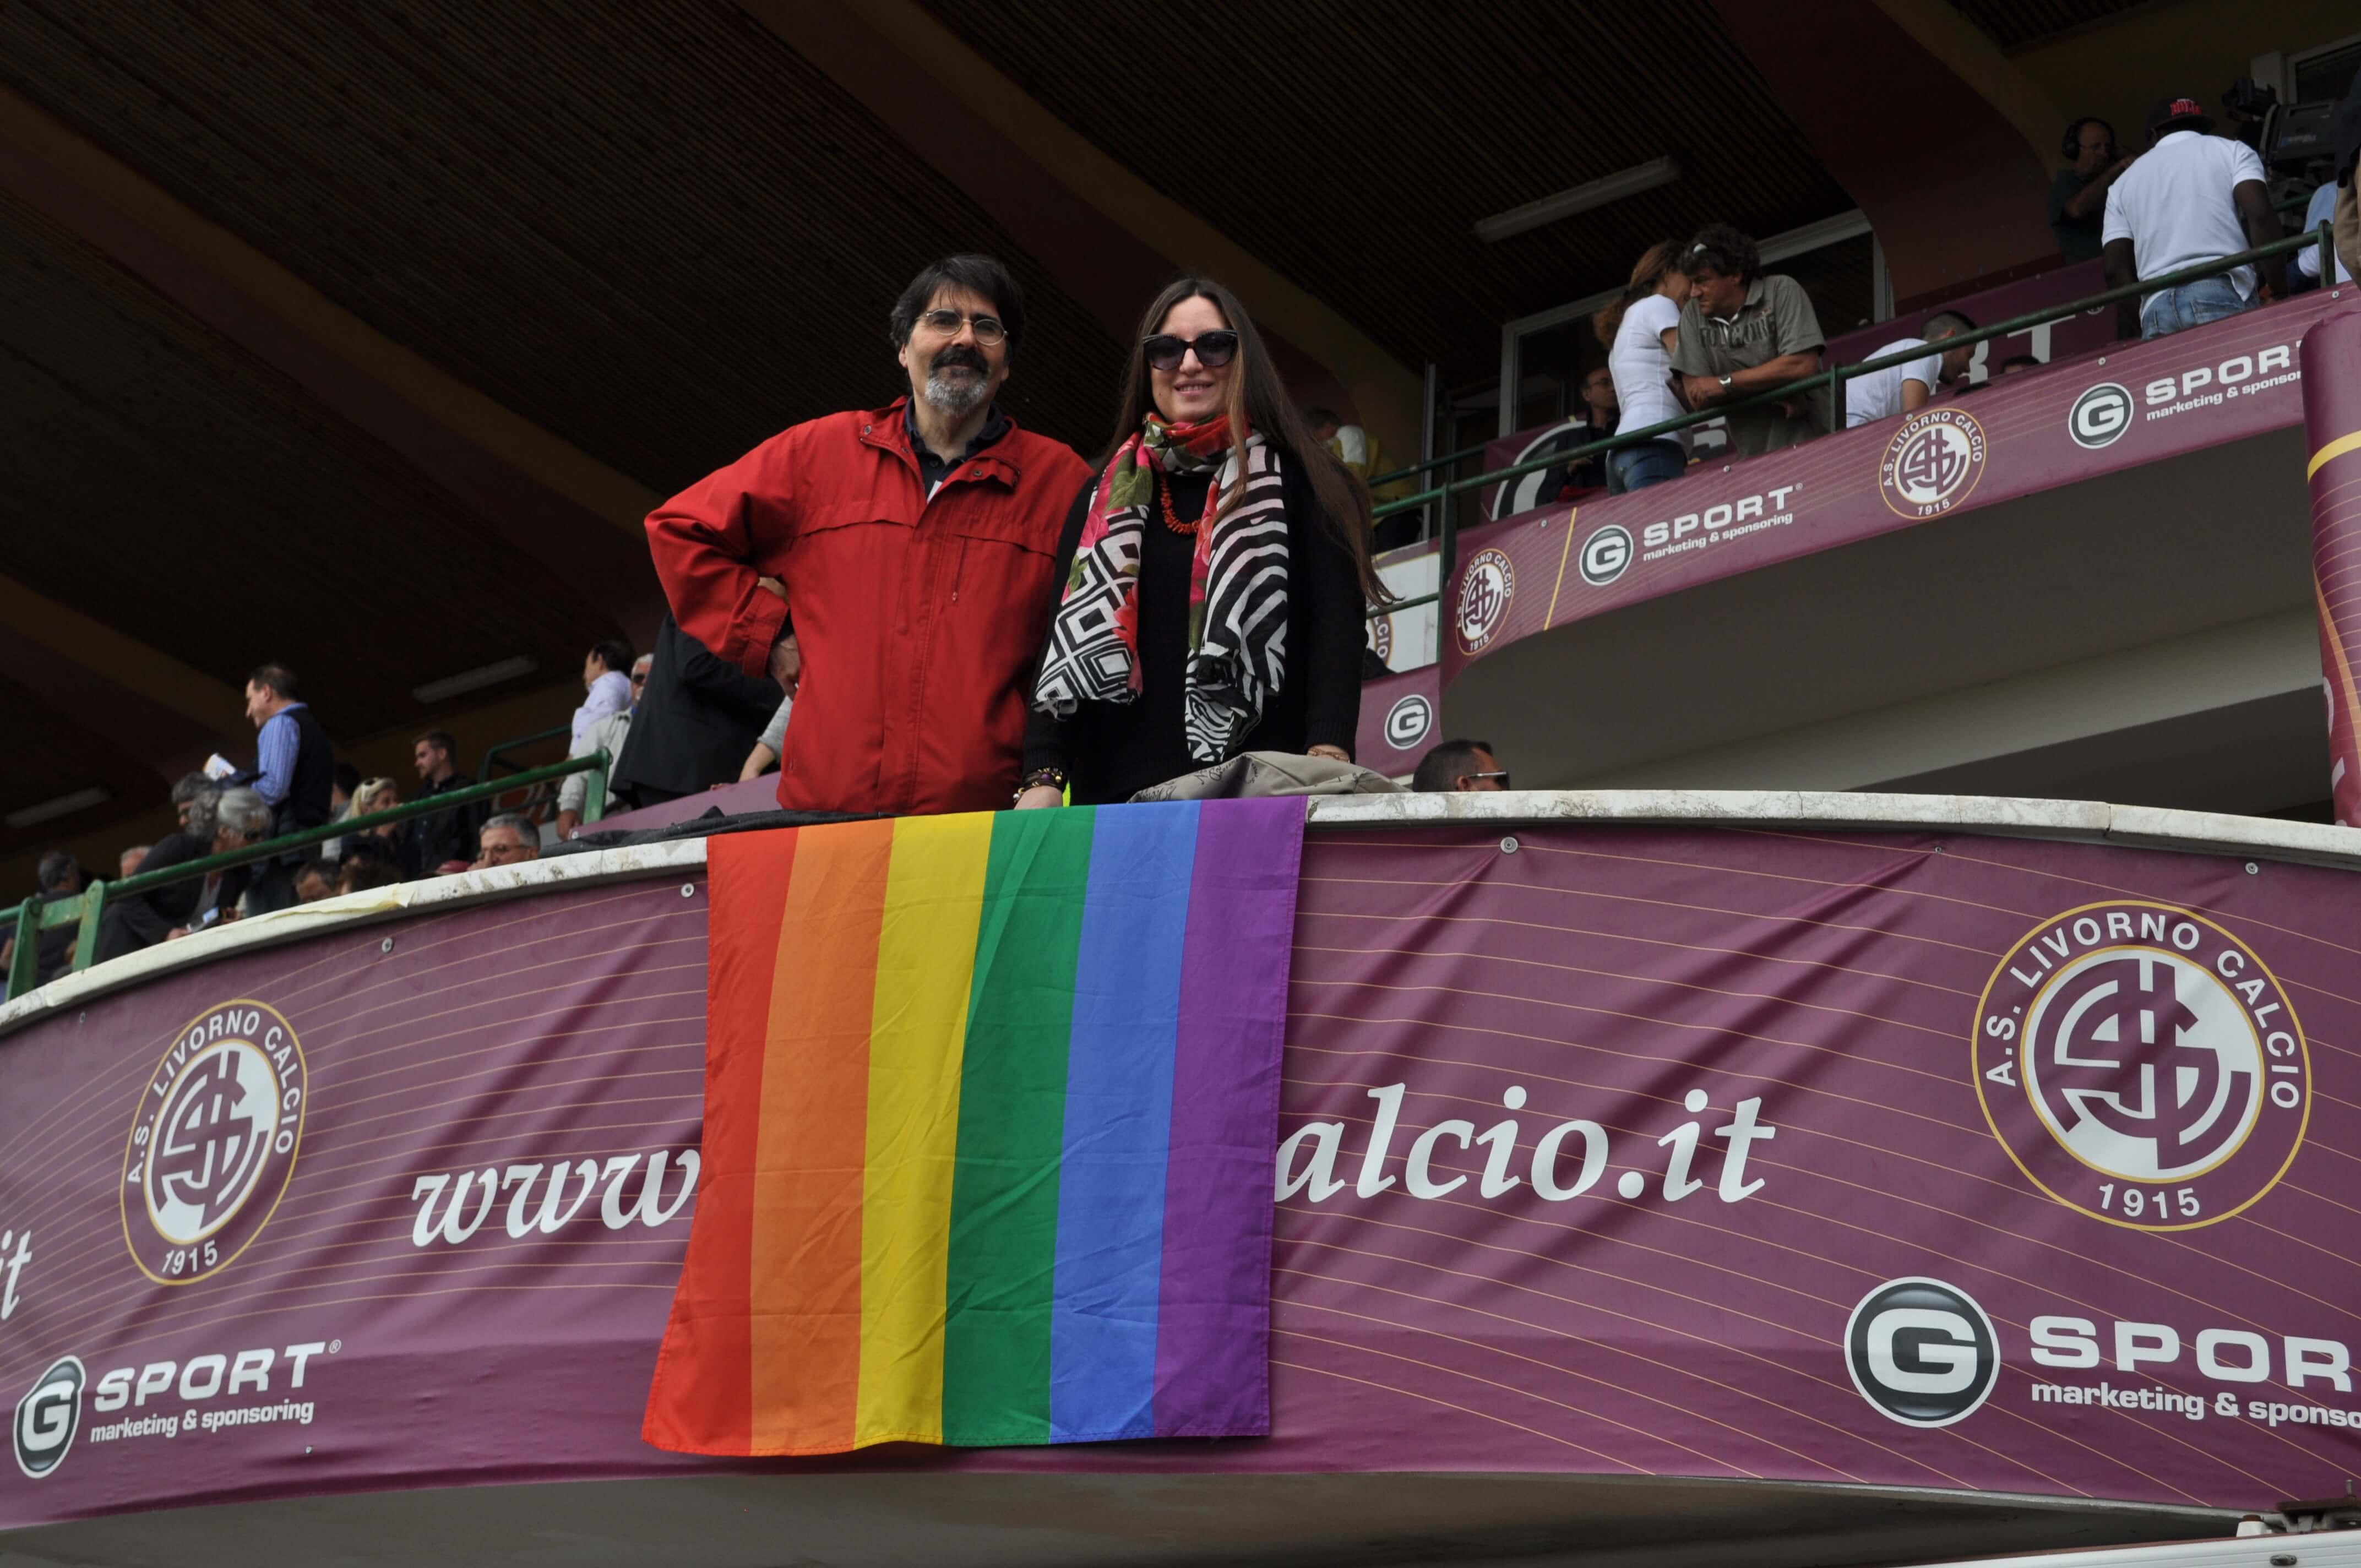 #IDAHOT: i calciatori del Livorno scendono in campo contro l'omofobia